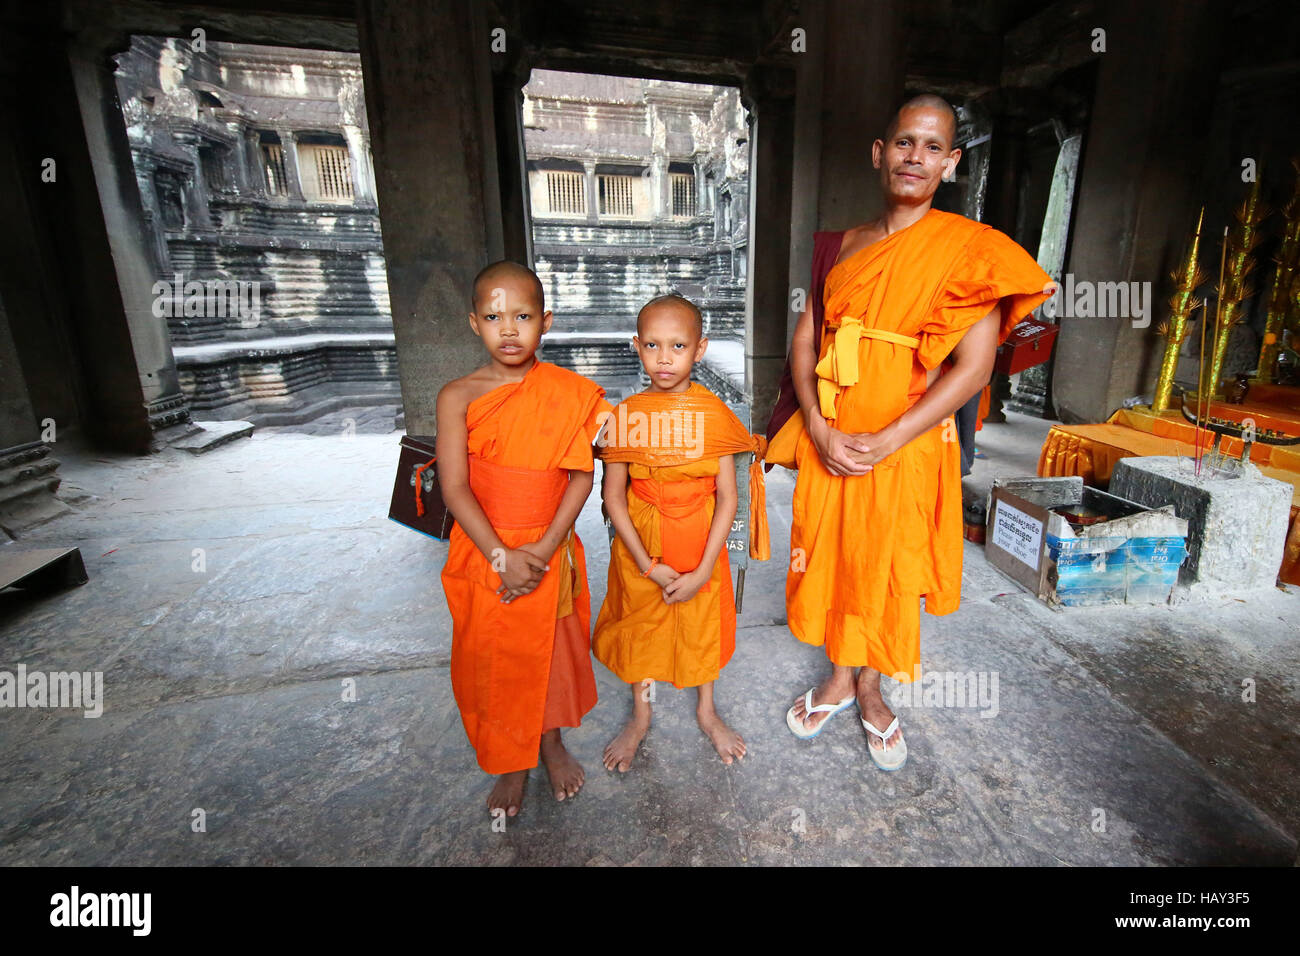 Les jeunes moines bouddhistes au temple d'Angkor Wat à Siem Reap, Cambodge Banque D'Images